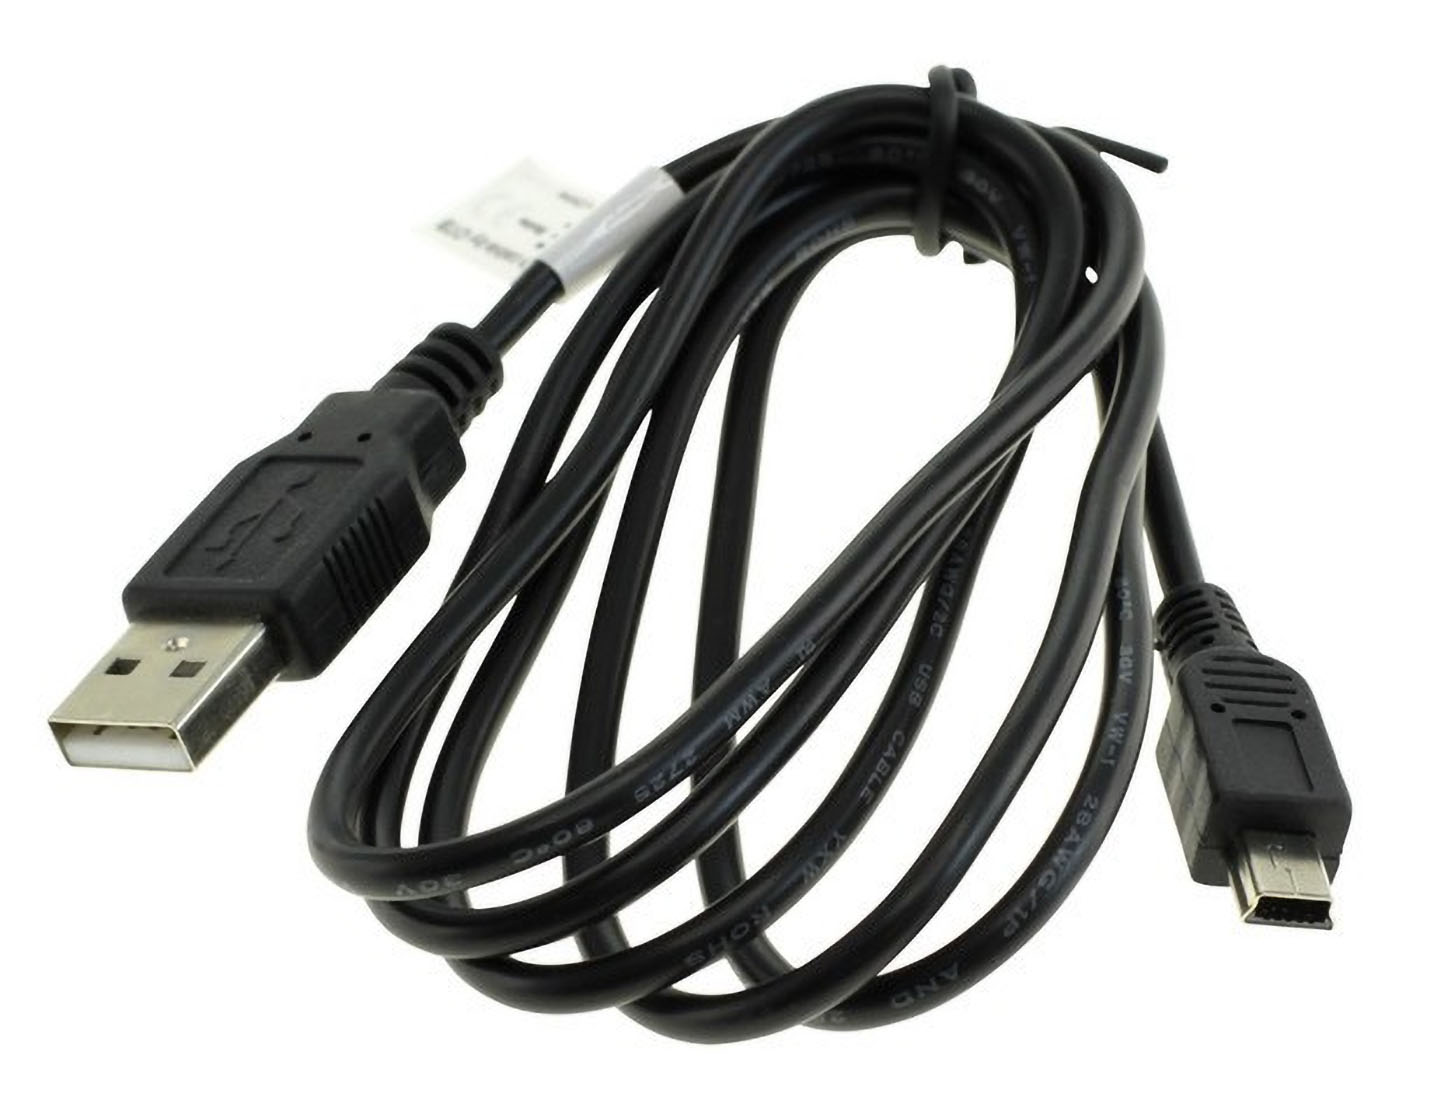 MOBILOTEC Life schwarz Kabel USB-Datenkabel sonstige Medion kompatibel E44050 Medion, mit